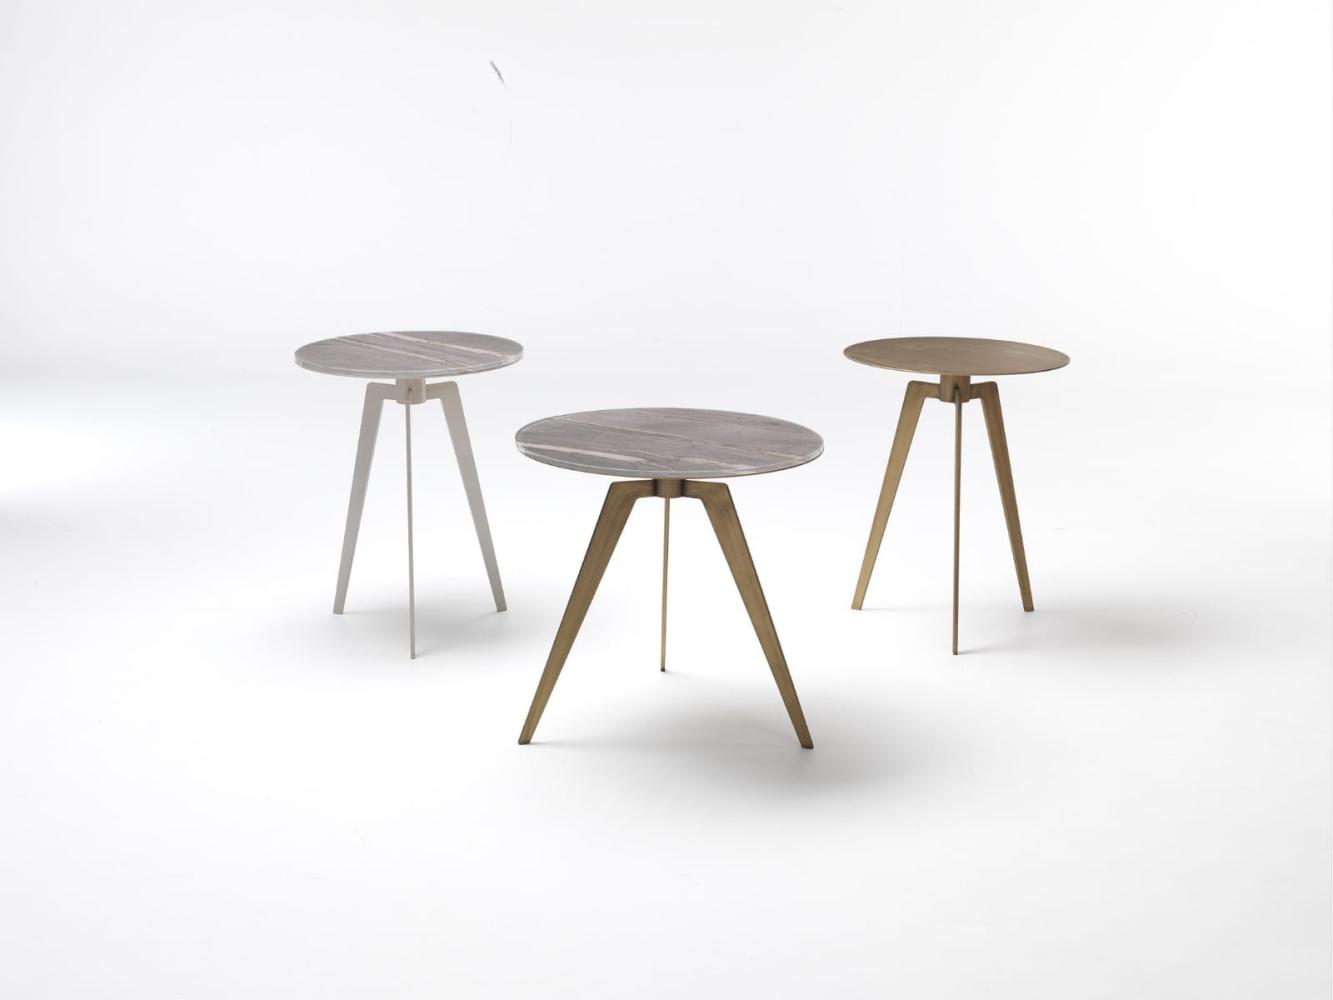 Tisch Wohnzimmertisch Tische Couchtisch Massiv Beistelltisch Kaffeetisch Design Bild 1